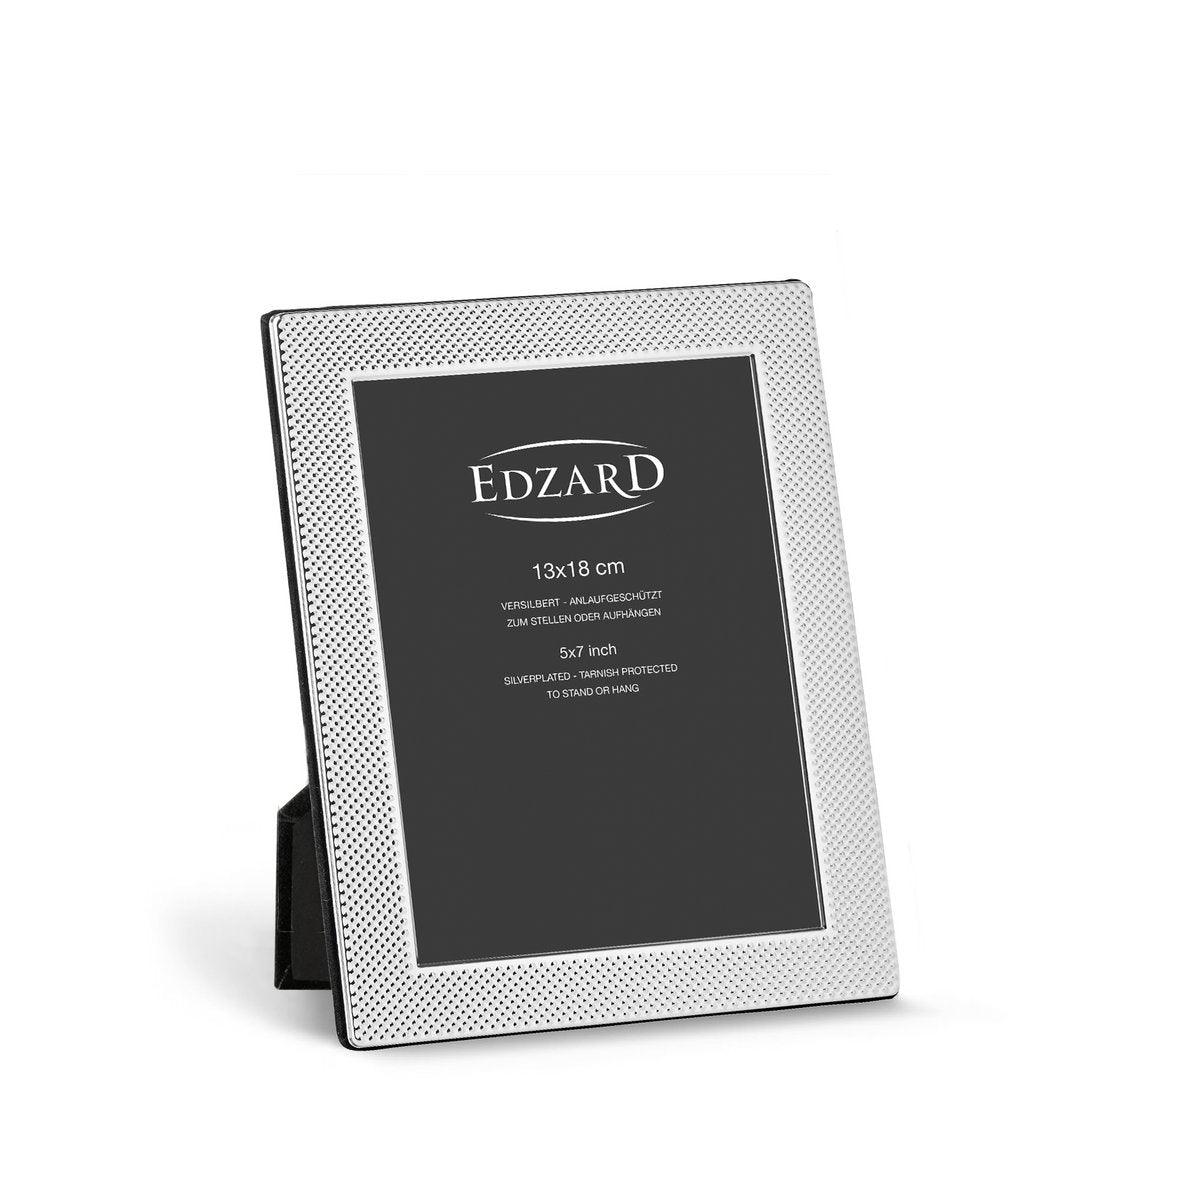 EDZARD Fotorahmen Cagliari für Foto 13 x 18 cm, edel versilbert, anlaufgeschützt, mit 2 Aufhängern - HomeDesign Knaus